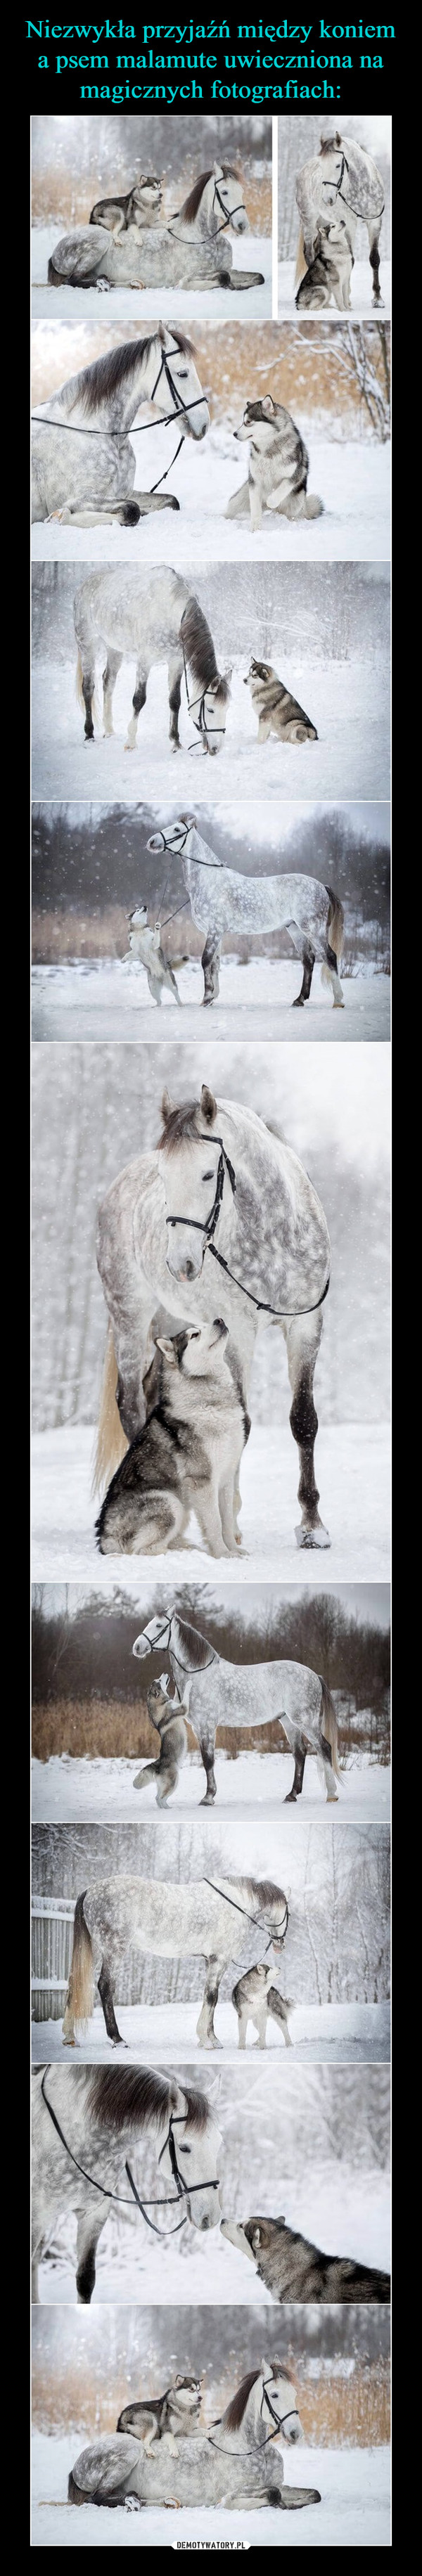 Niezwykła przyjaźń między koniem a psem malamute uwieczniona na magicznych fotografiach: